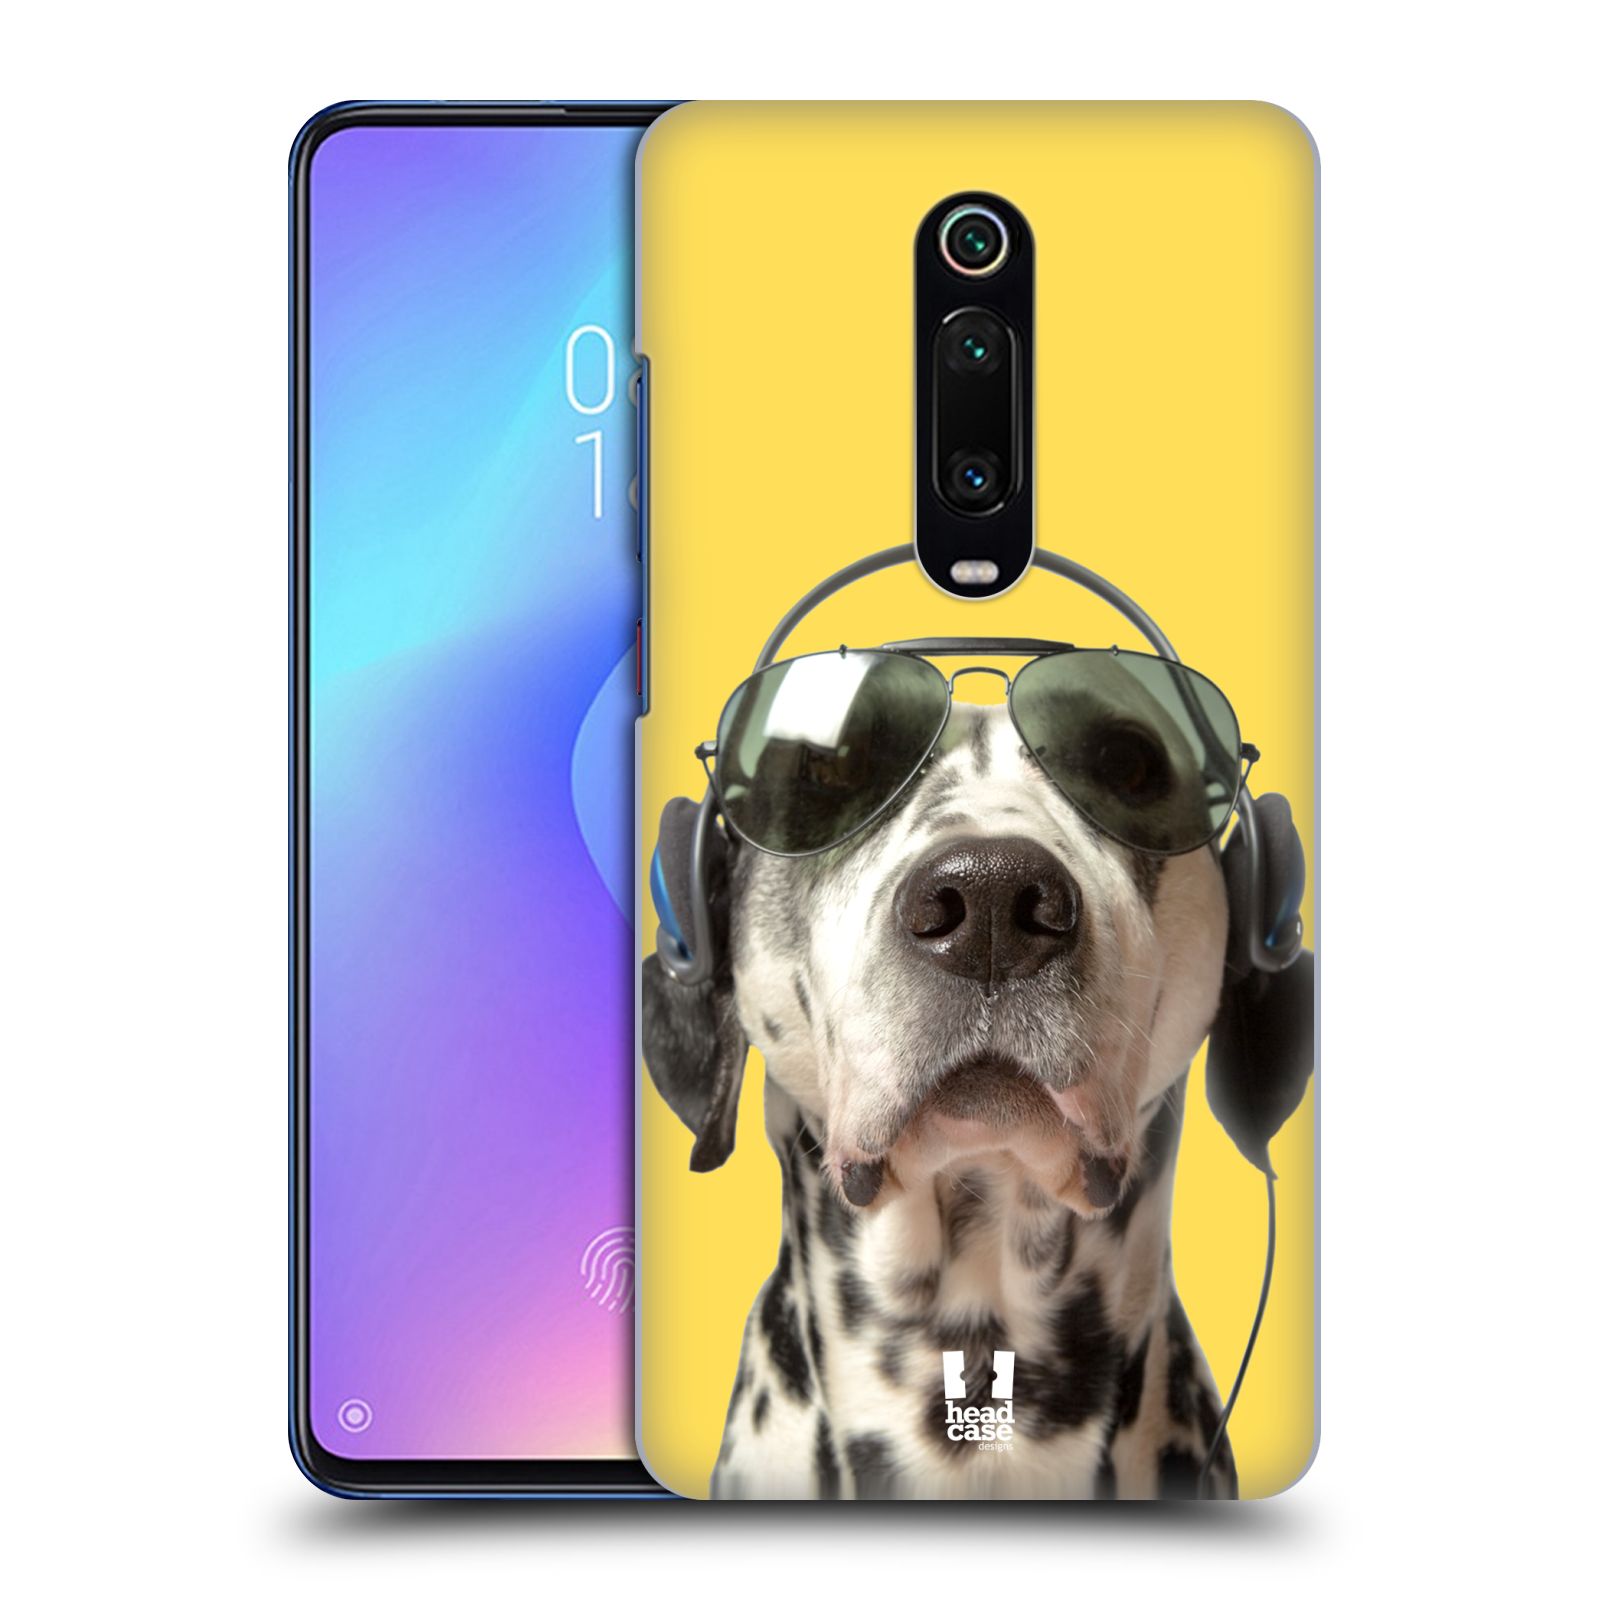 Pouzdro na mobil Xiaomi Mi 9T PRO - HEAD CASE - vzor Legrační zvířátka dalmatin se sluchátky žlutá